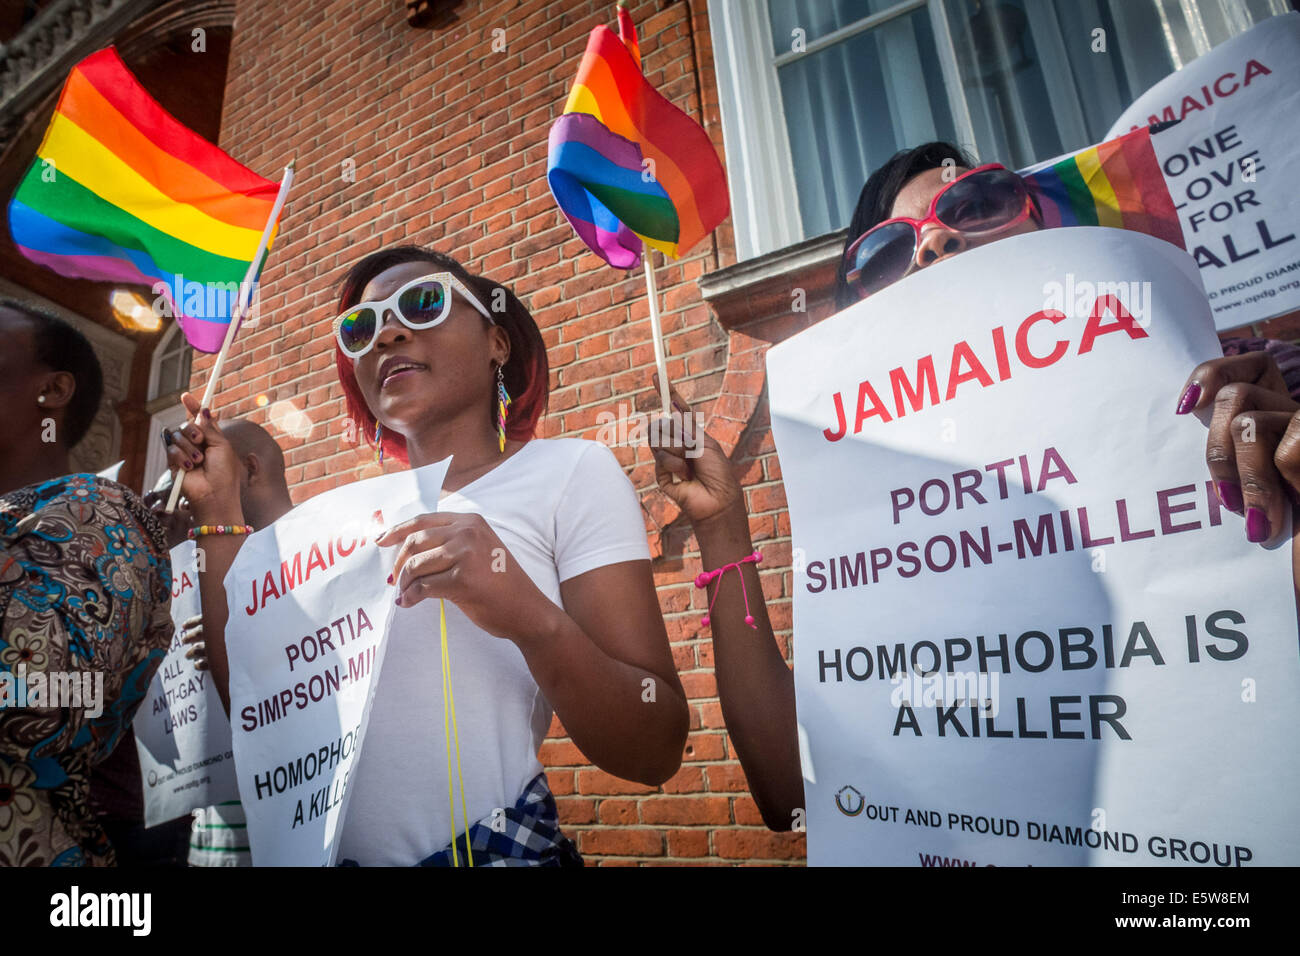 London, UK. 6. August 2014. LGBT-Protest, "Anti-Homosexuellen Gesetz außerhalb jamaikanischen Hochkommissariat Credit aufzuheben": Guy Corbishley/Alamy Live-Nachrichten Stockfoto